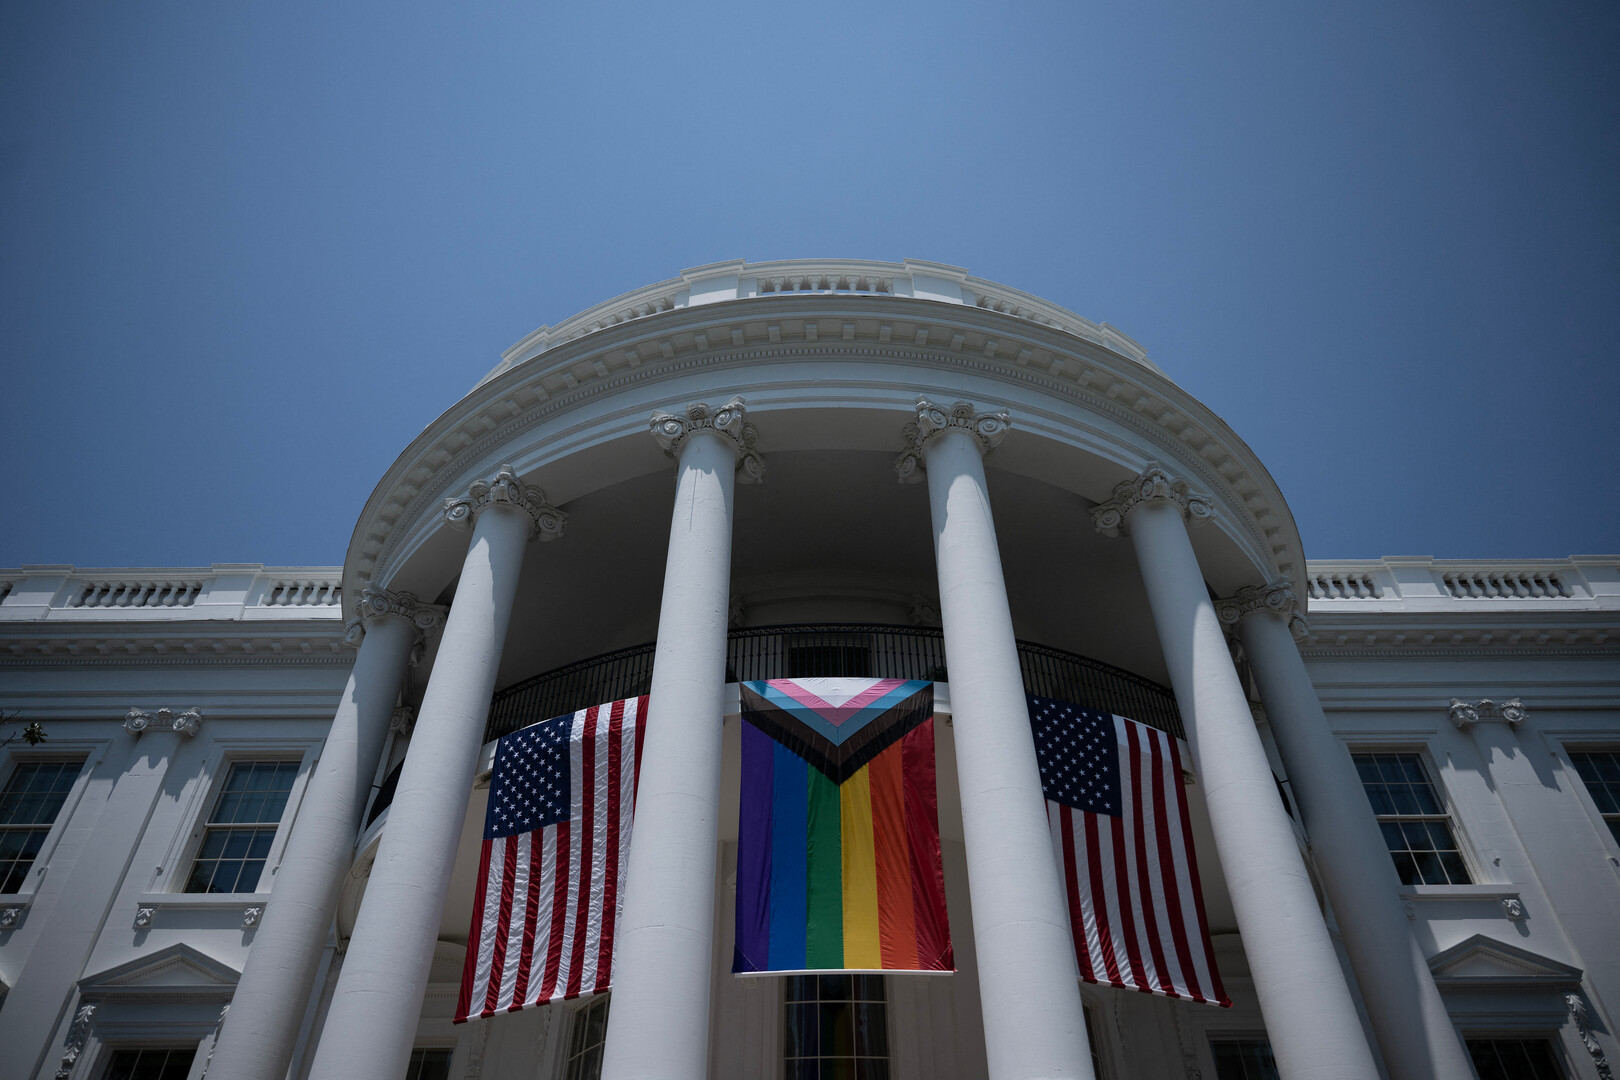 سخرية وضجة في مواقع التواصل عقب رفع علم المثليين على البيت الأبيض (صور+ فيديوهات)